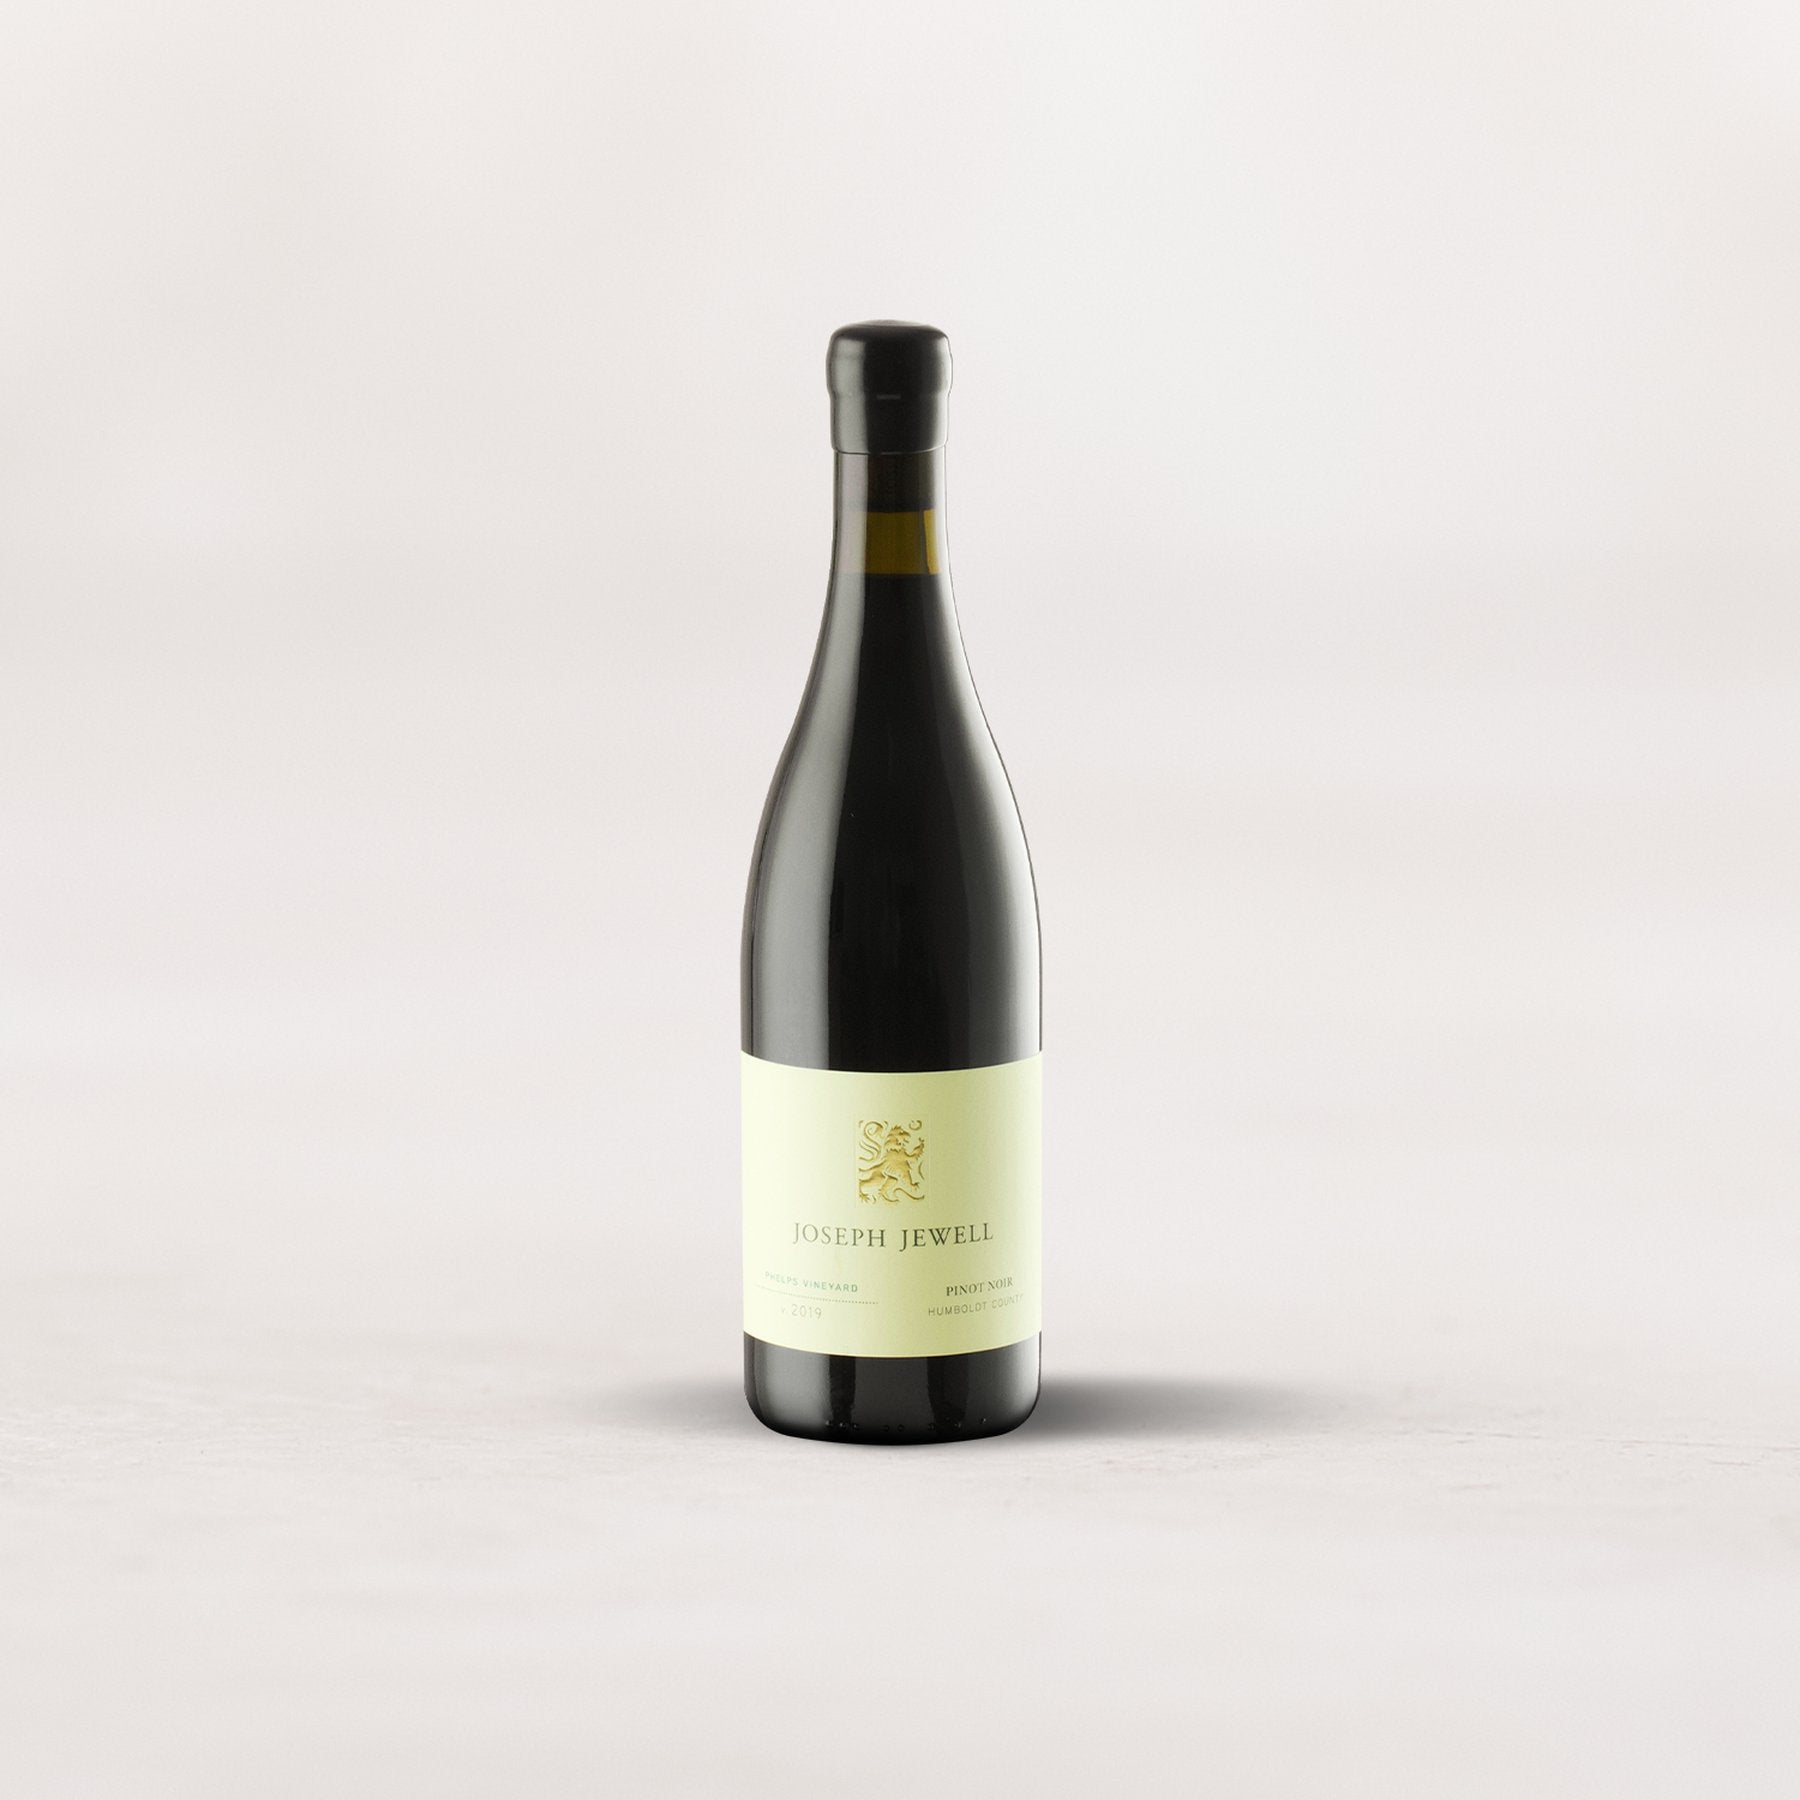 Joseph Jewell, “Phelps Vineyard” Pinot Noir